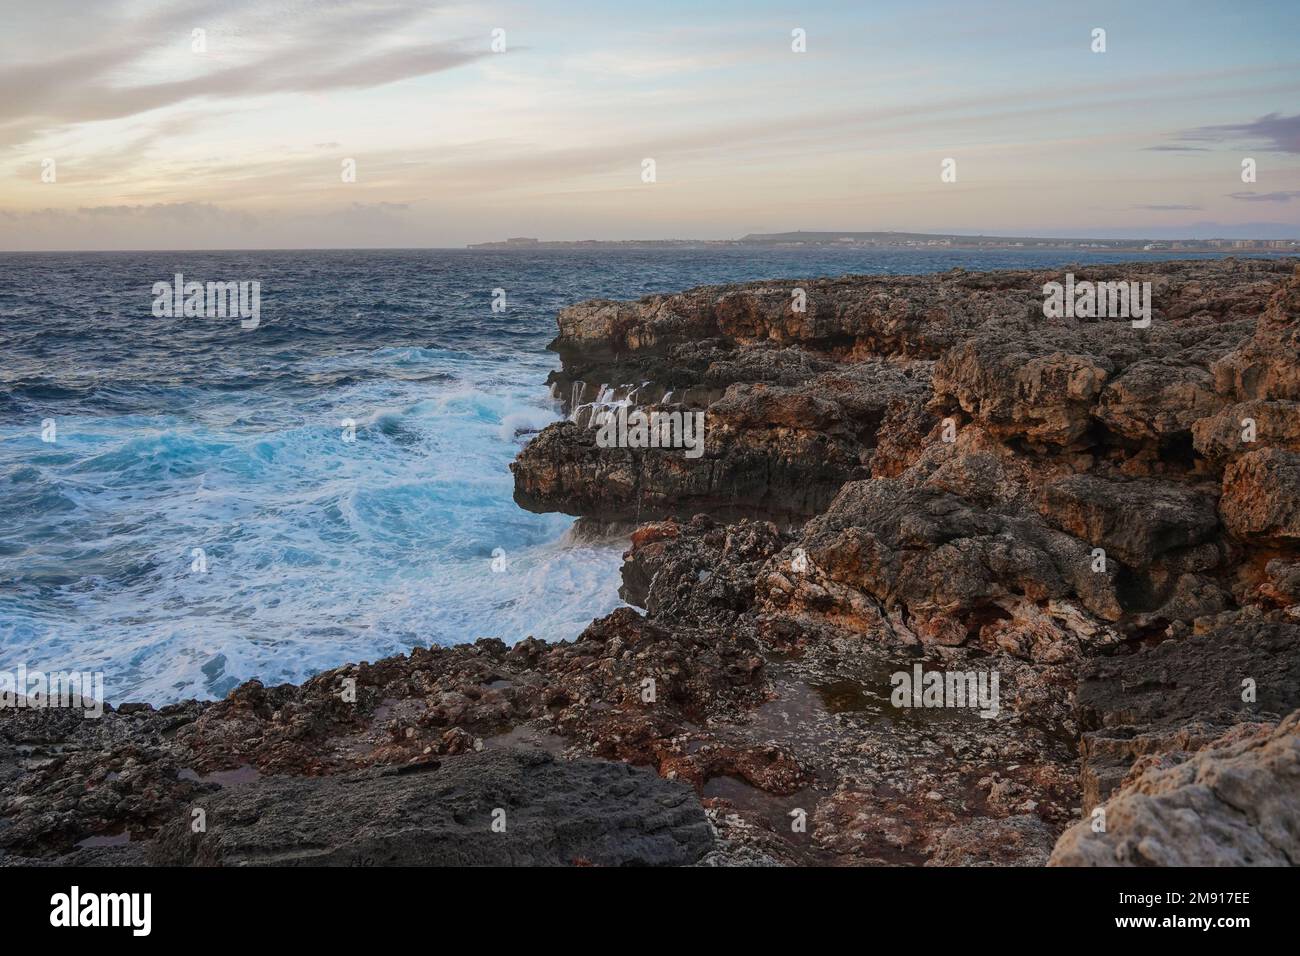 Onde alte, mare mosso, costa rocciosa vicino a Ciutadella, Minorca, isole Baleari, Spagna. Foto Stock